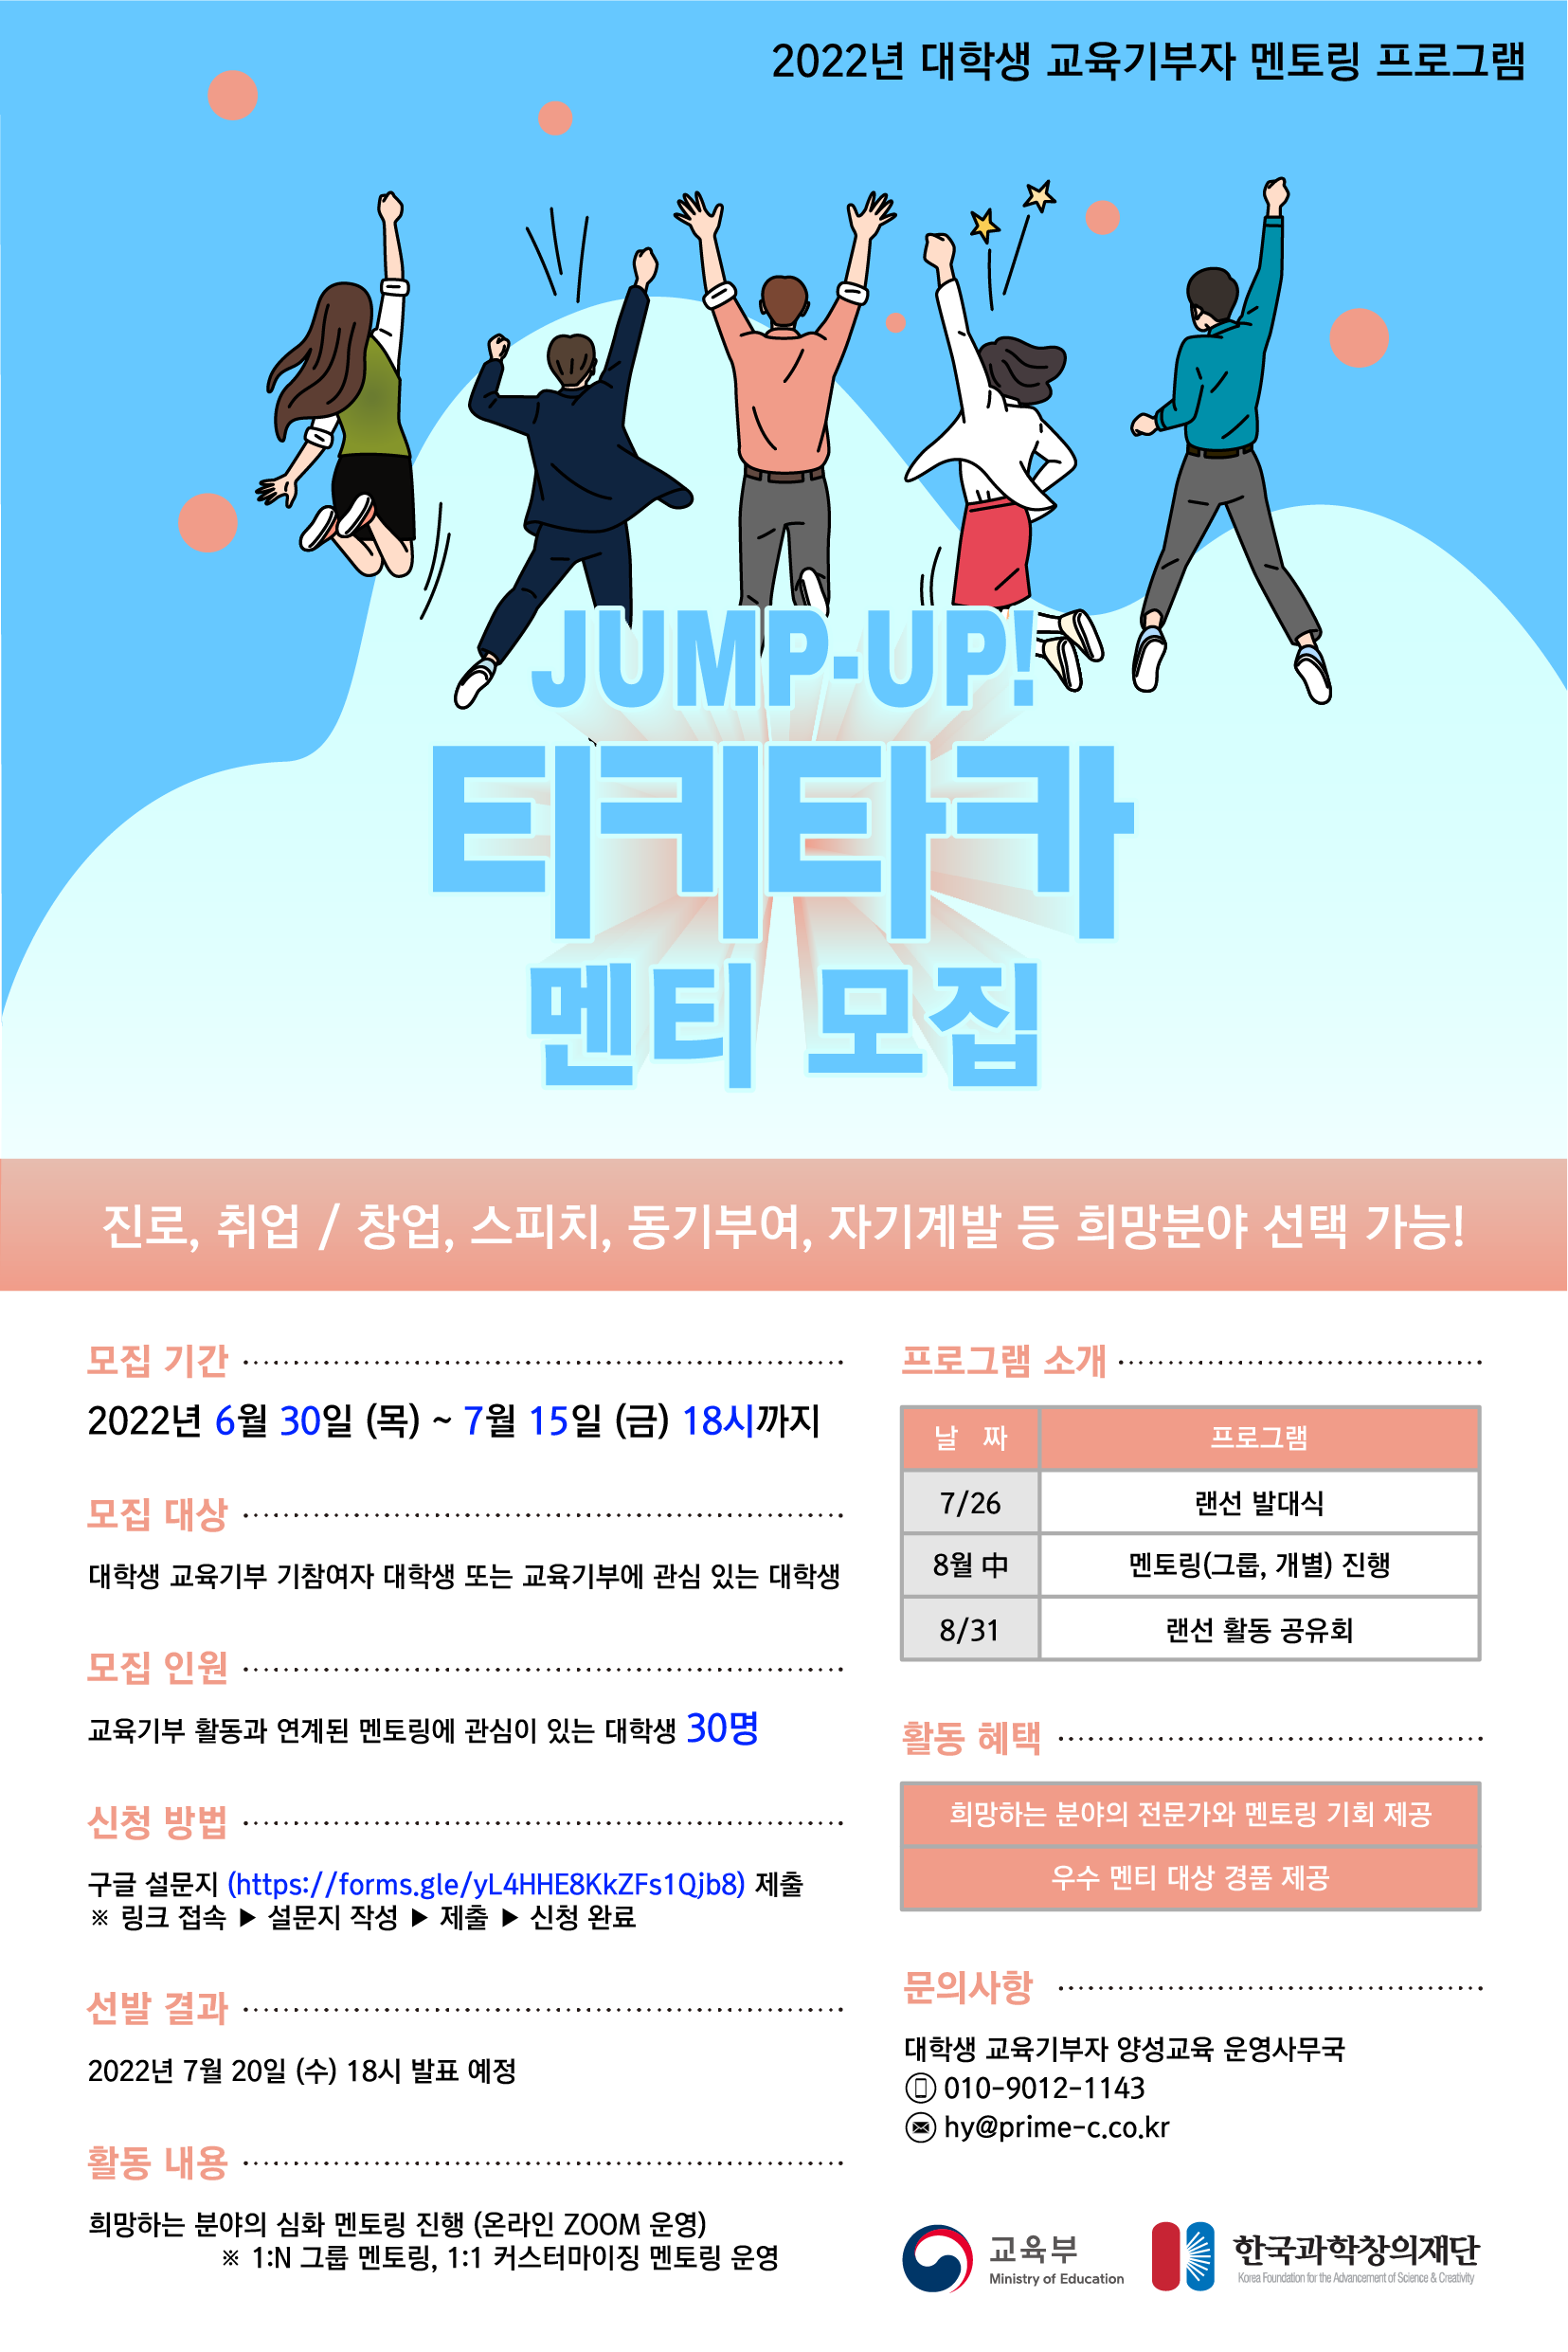 JUMP-UP 티키타카 멘토링 프로그램 참가 대학생 모집